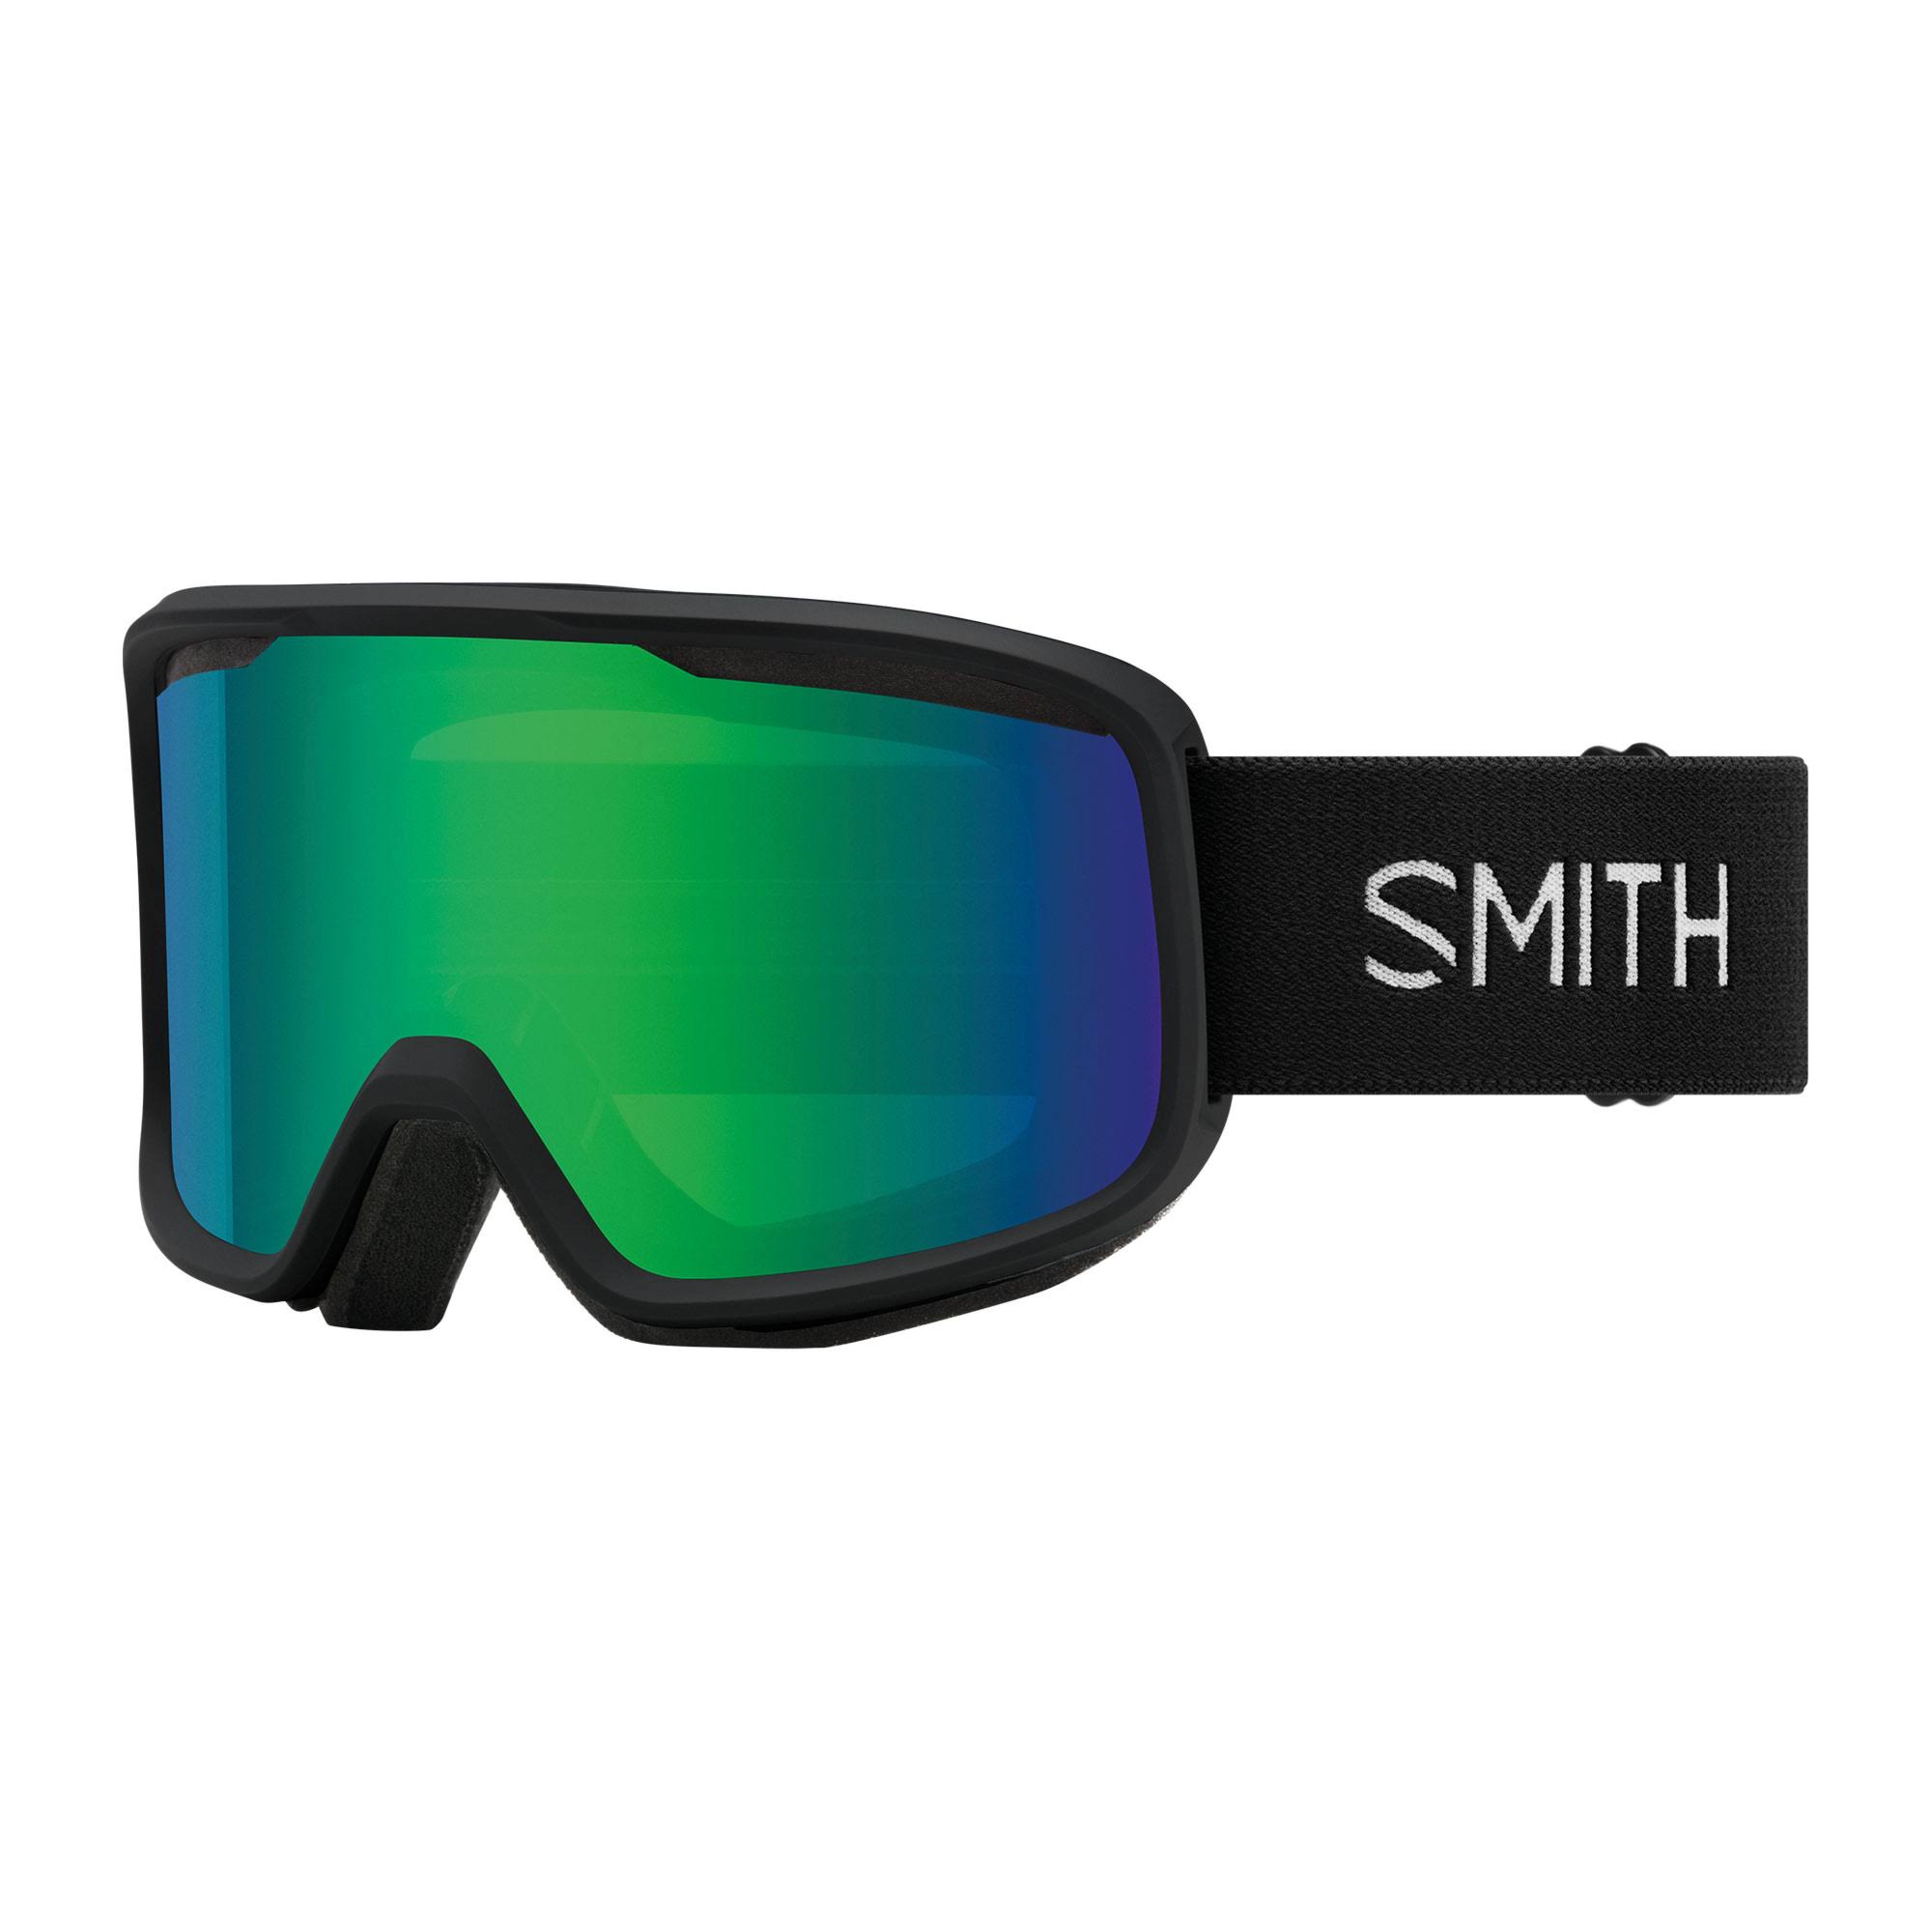 Smith Frontier Ski Goggles - Black / Green Sol-X Mirror